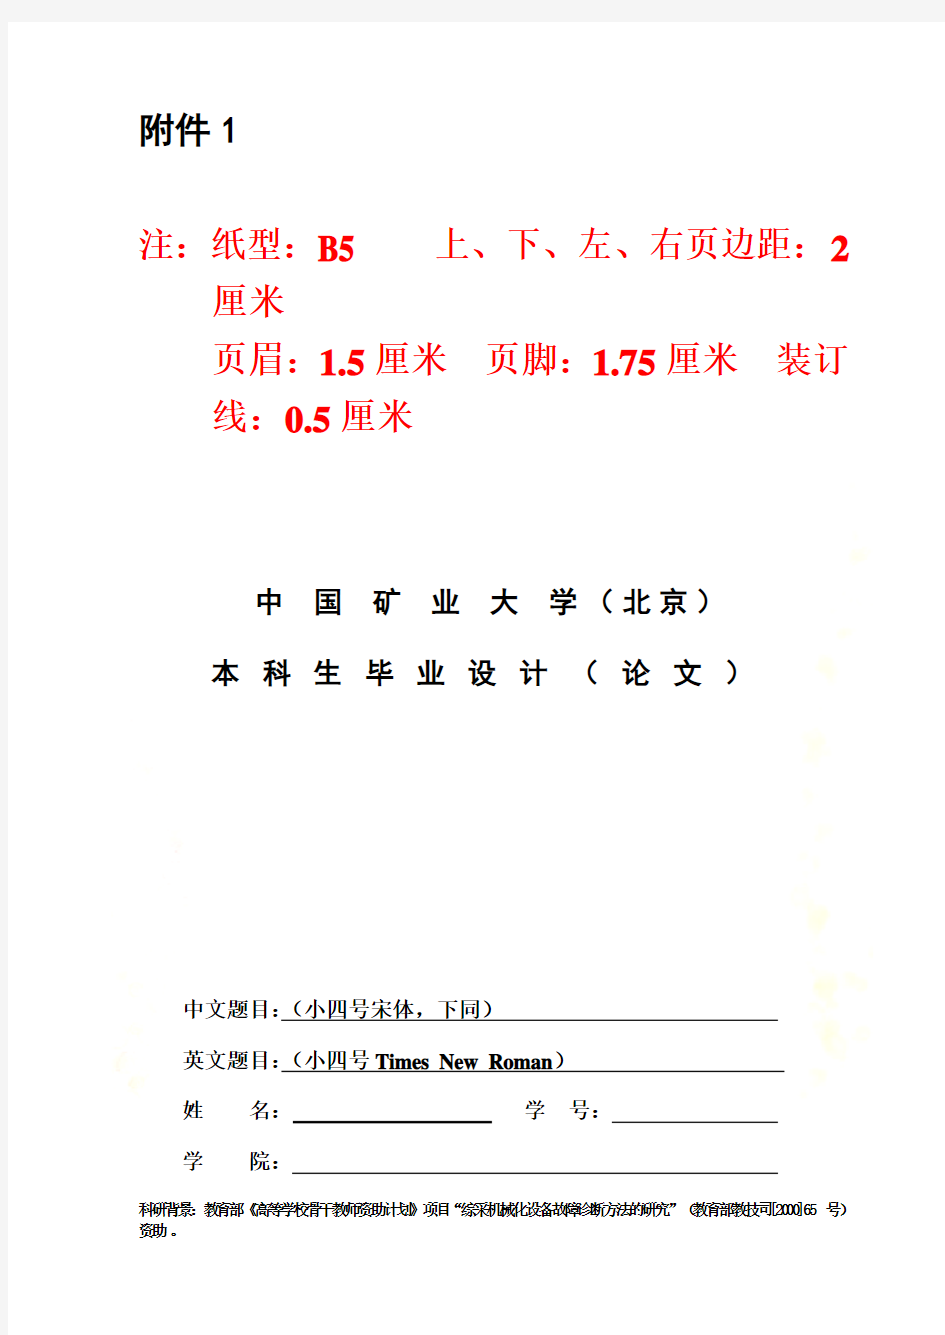 中国矿业大学(北京)本科生毕业设计(论文)撰写规范(2012届)